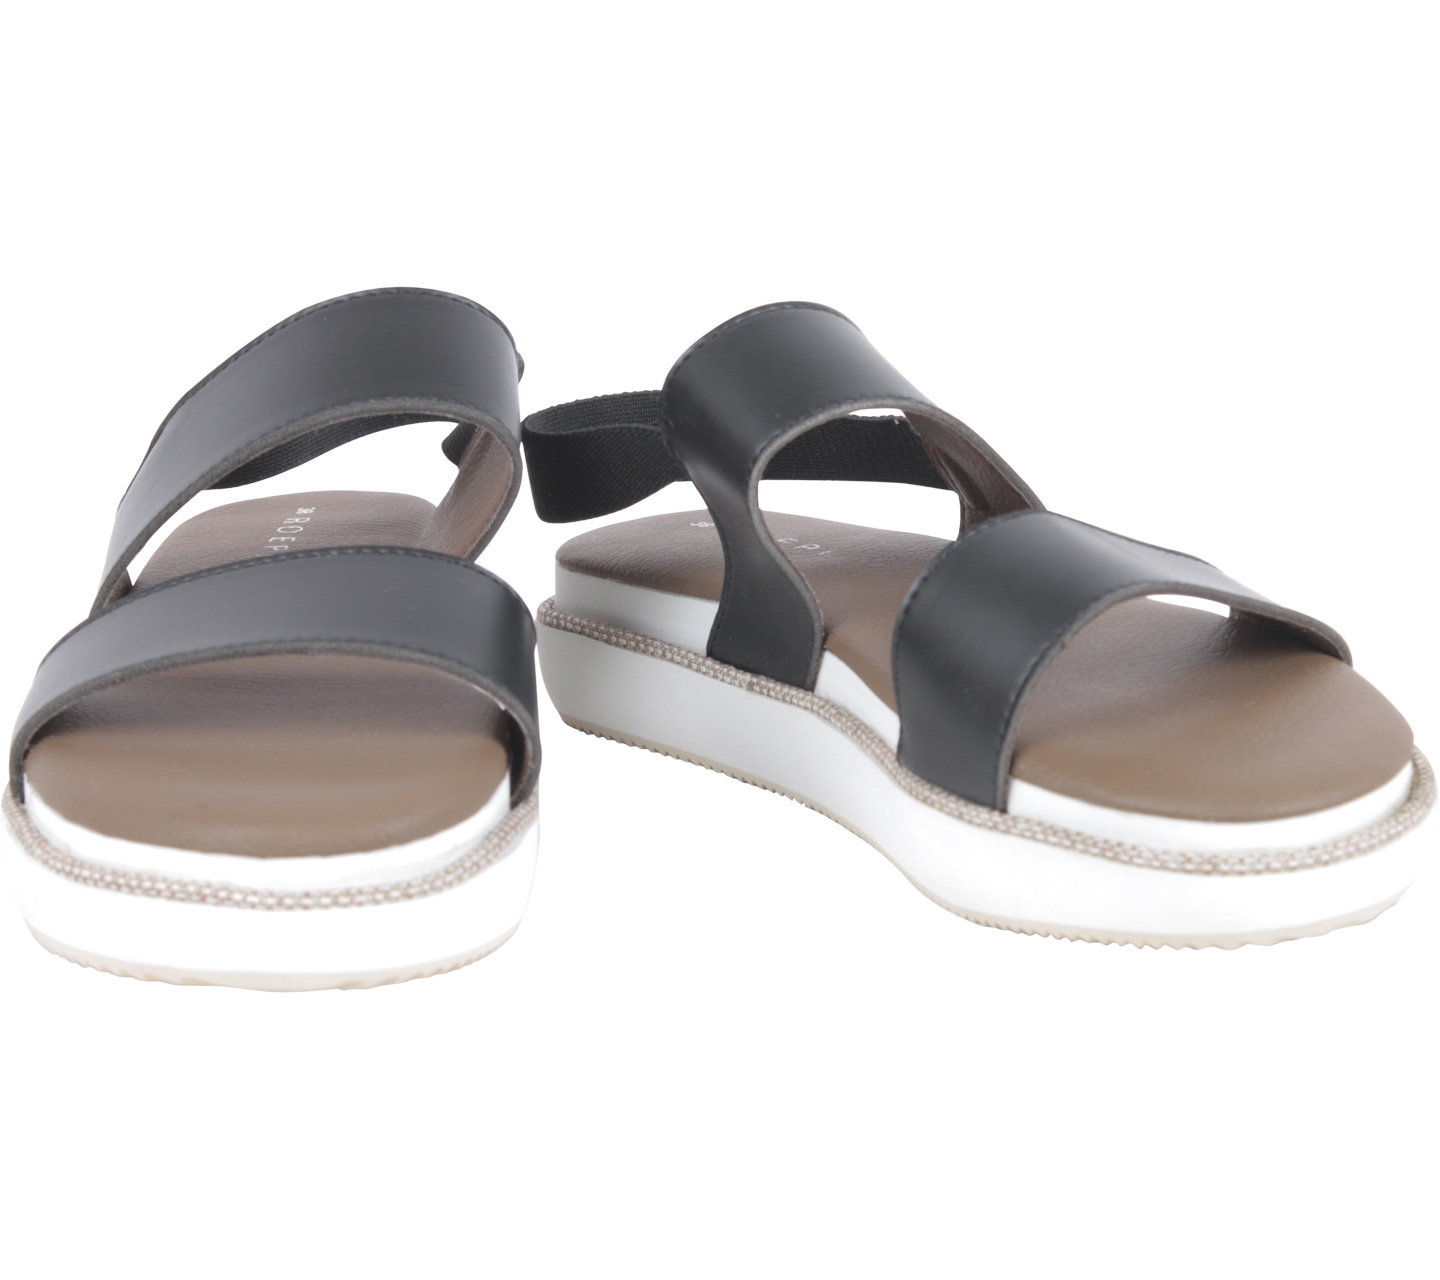 Roepi Black And White Platforn Sandals